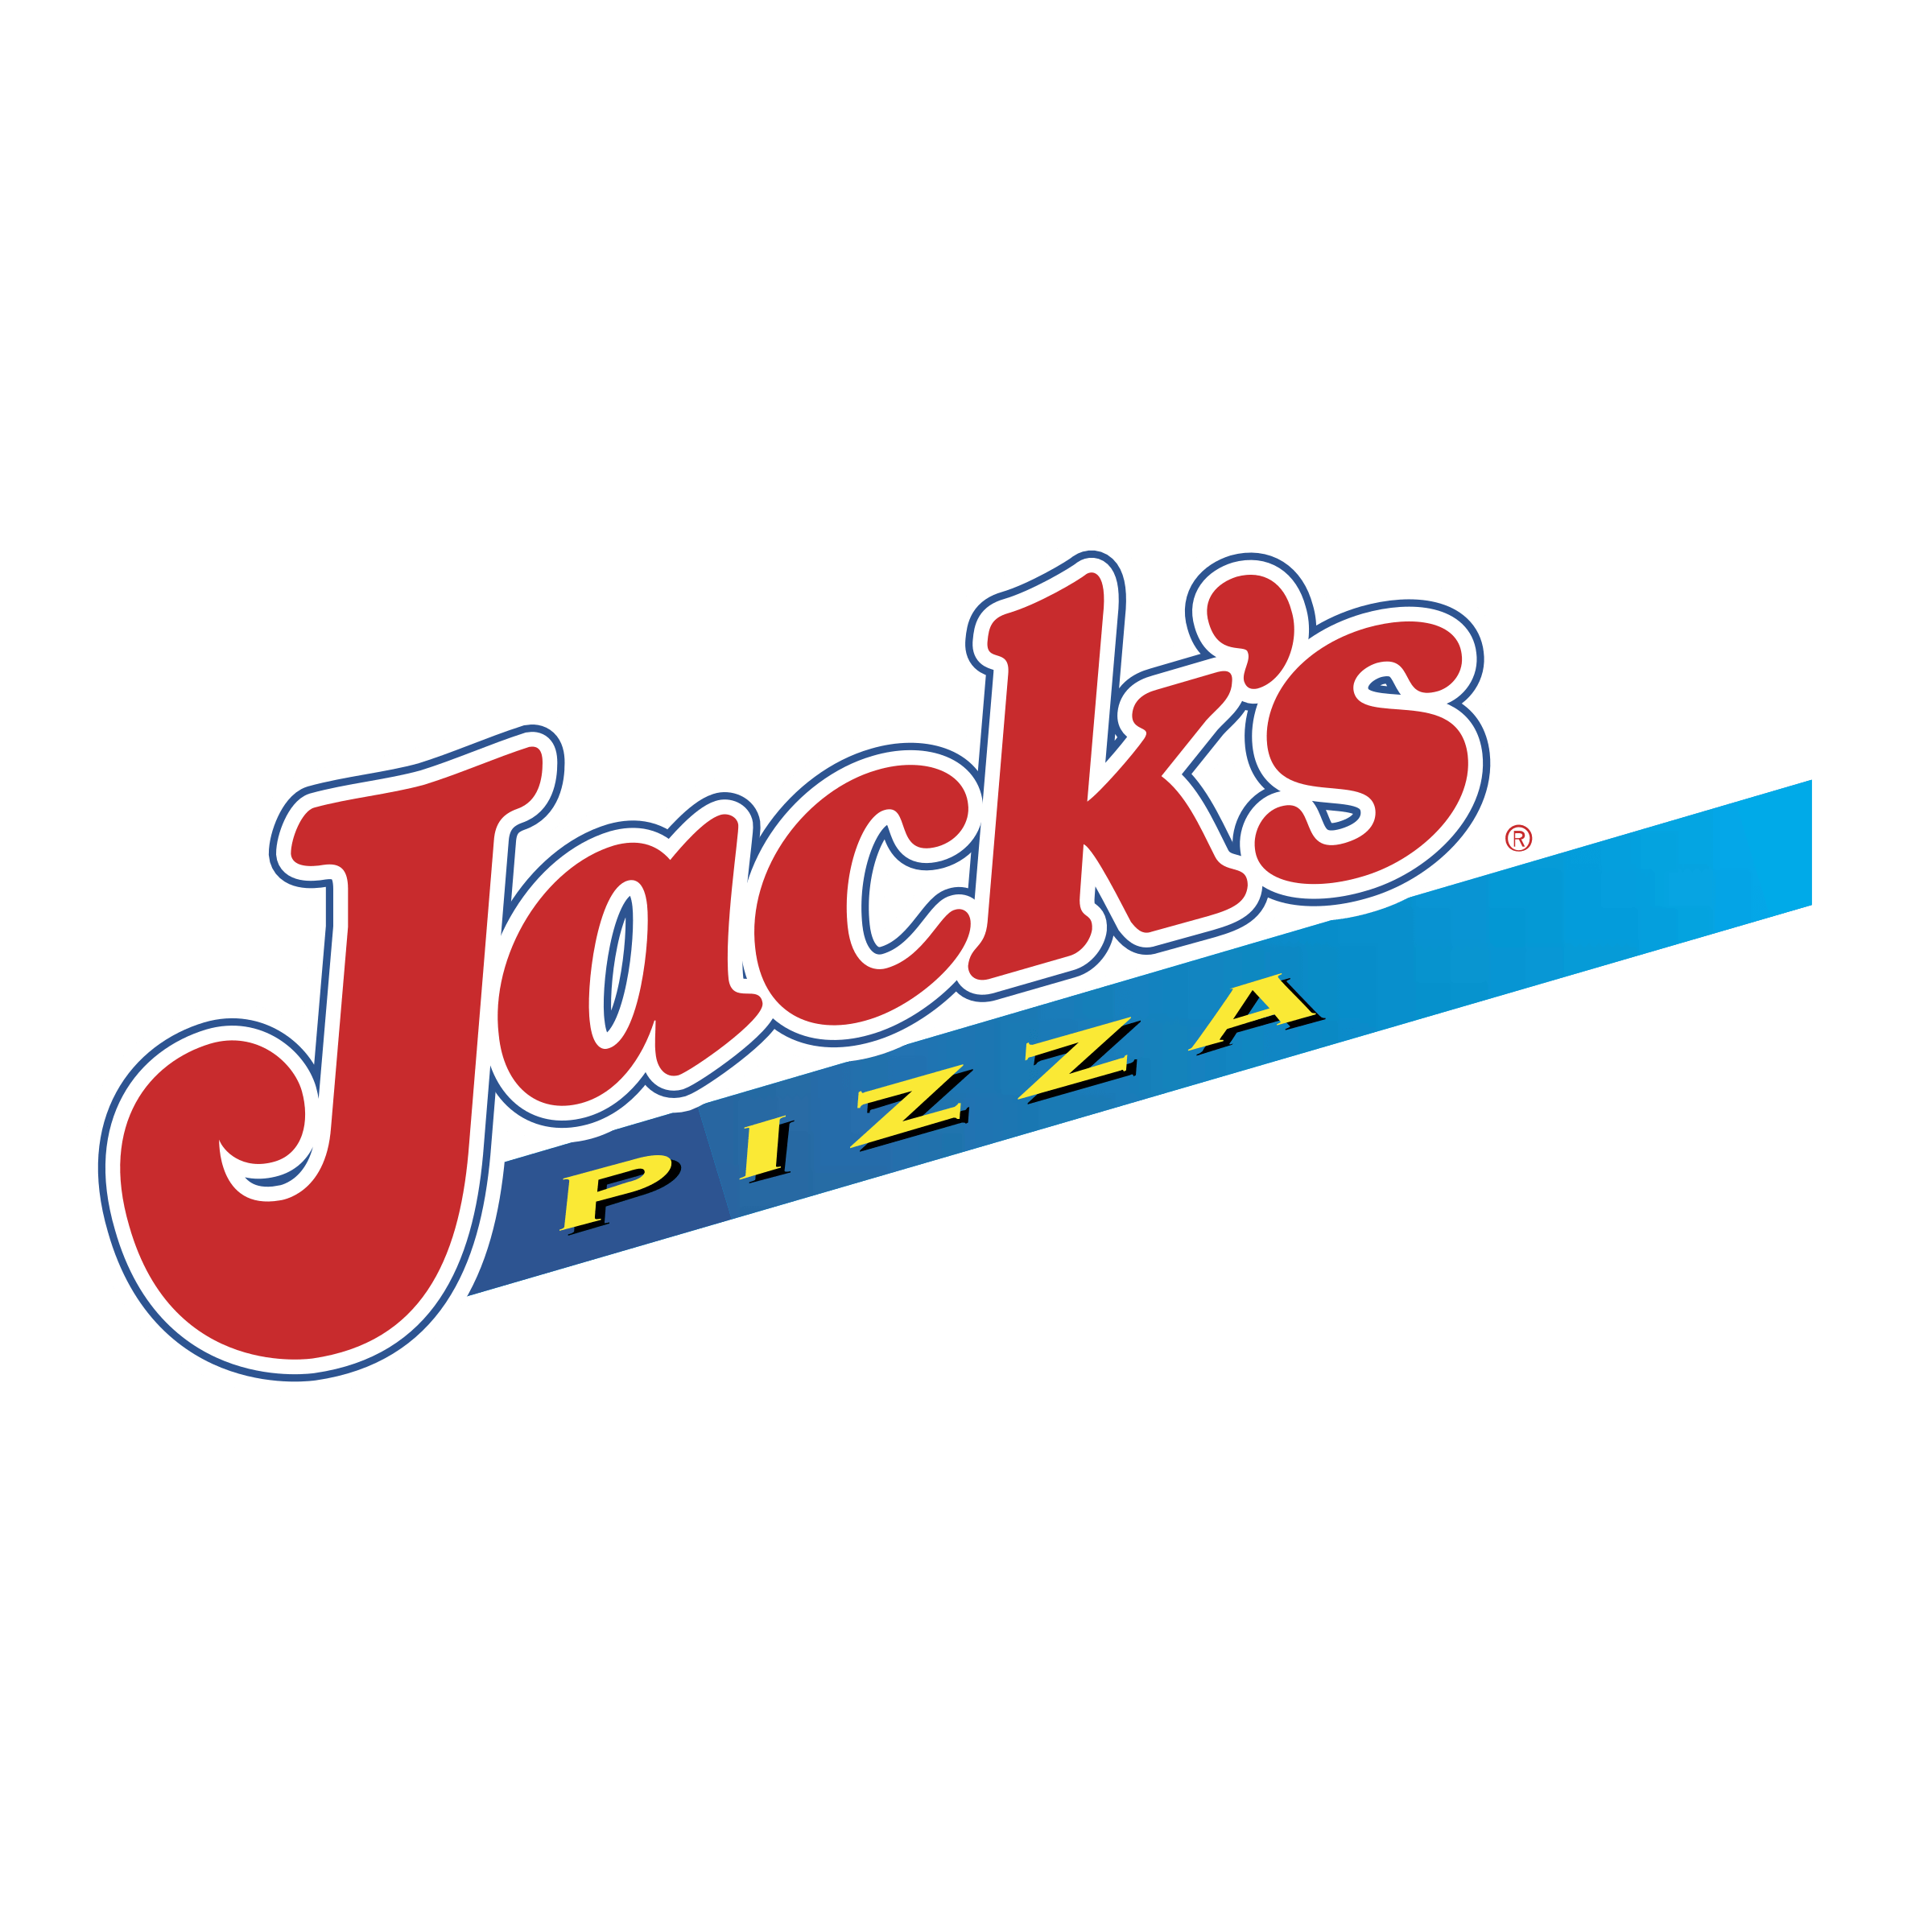 Jack's Logo - Jack's Pizza Logo PNG Transparent & SVG Vector - Freebie Supply